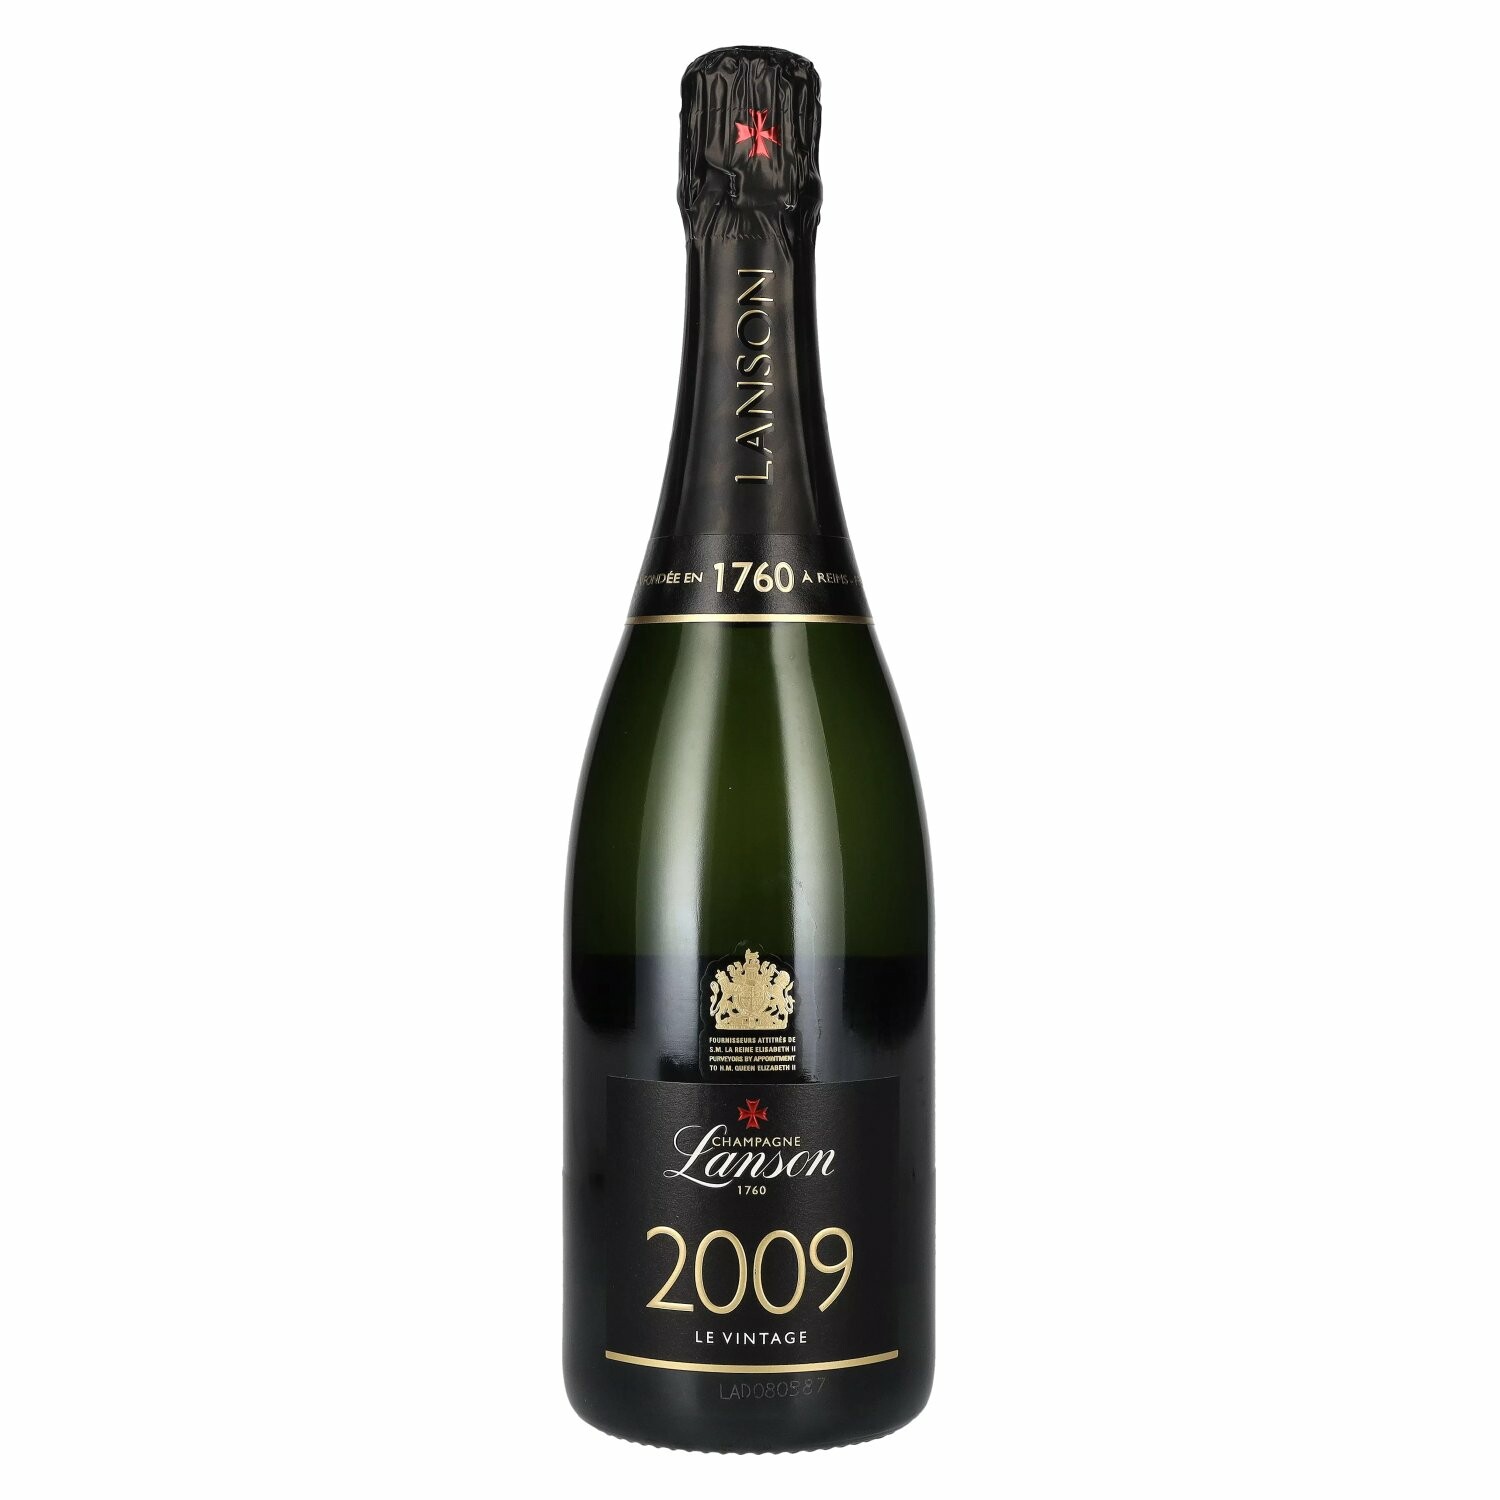 Champagne Lanson Le Vintage 2009 12,5% Vol. 0,75l